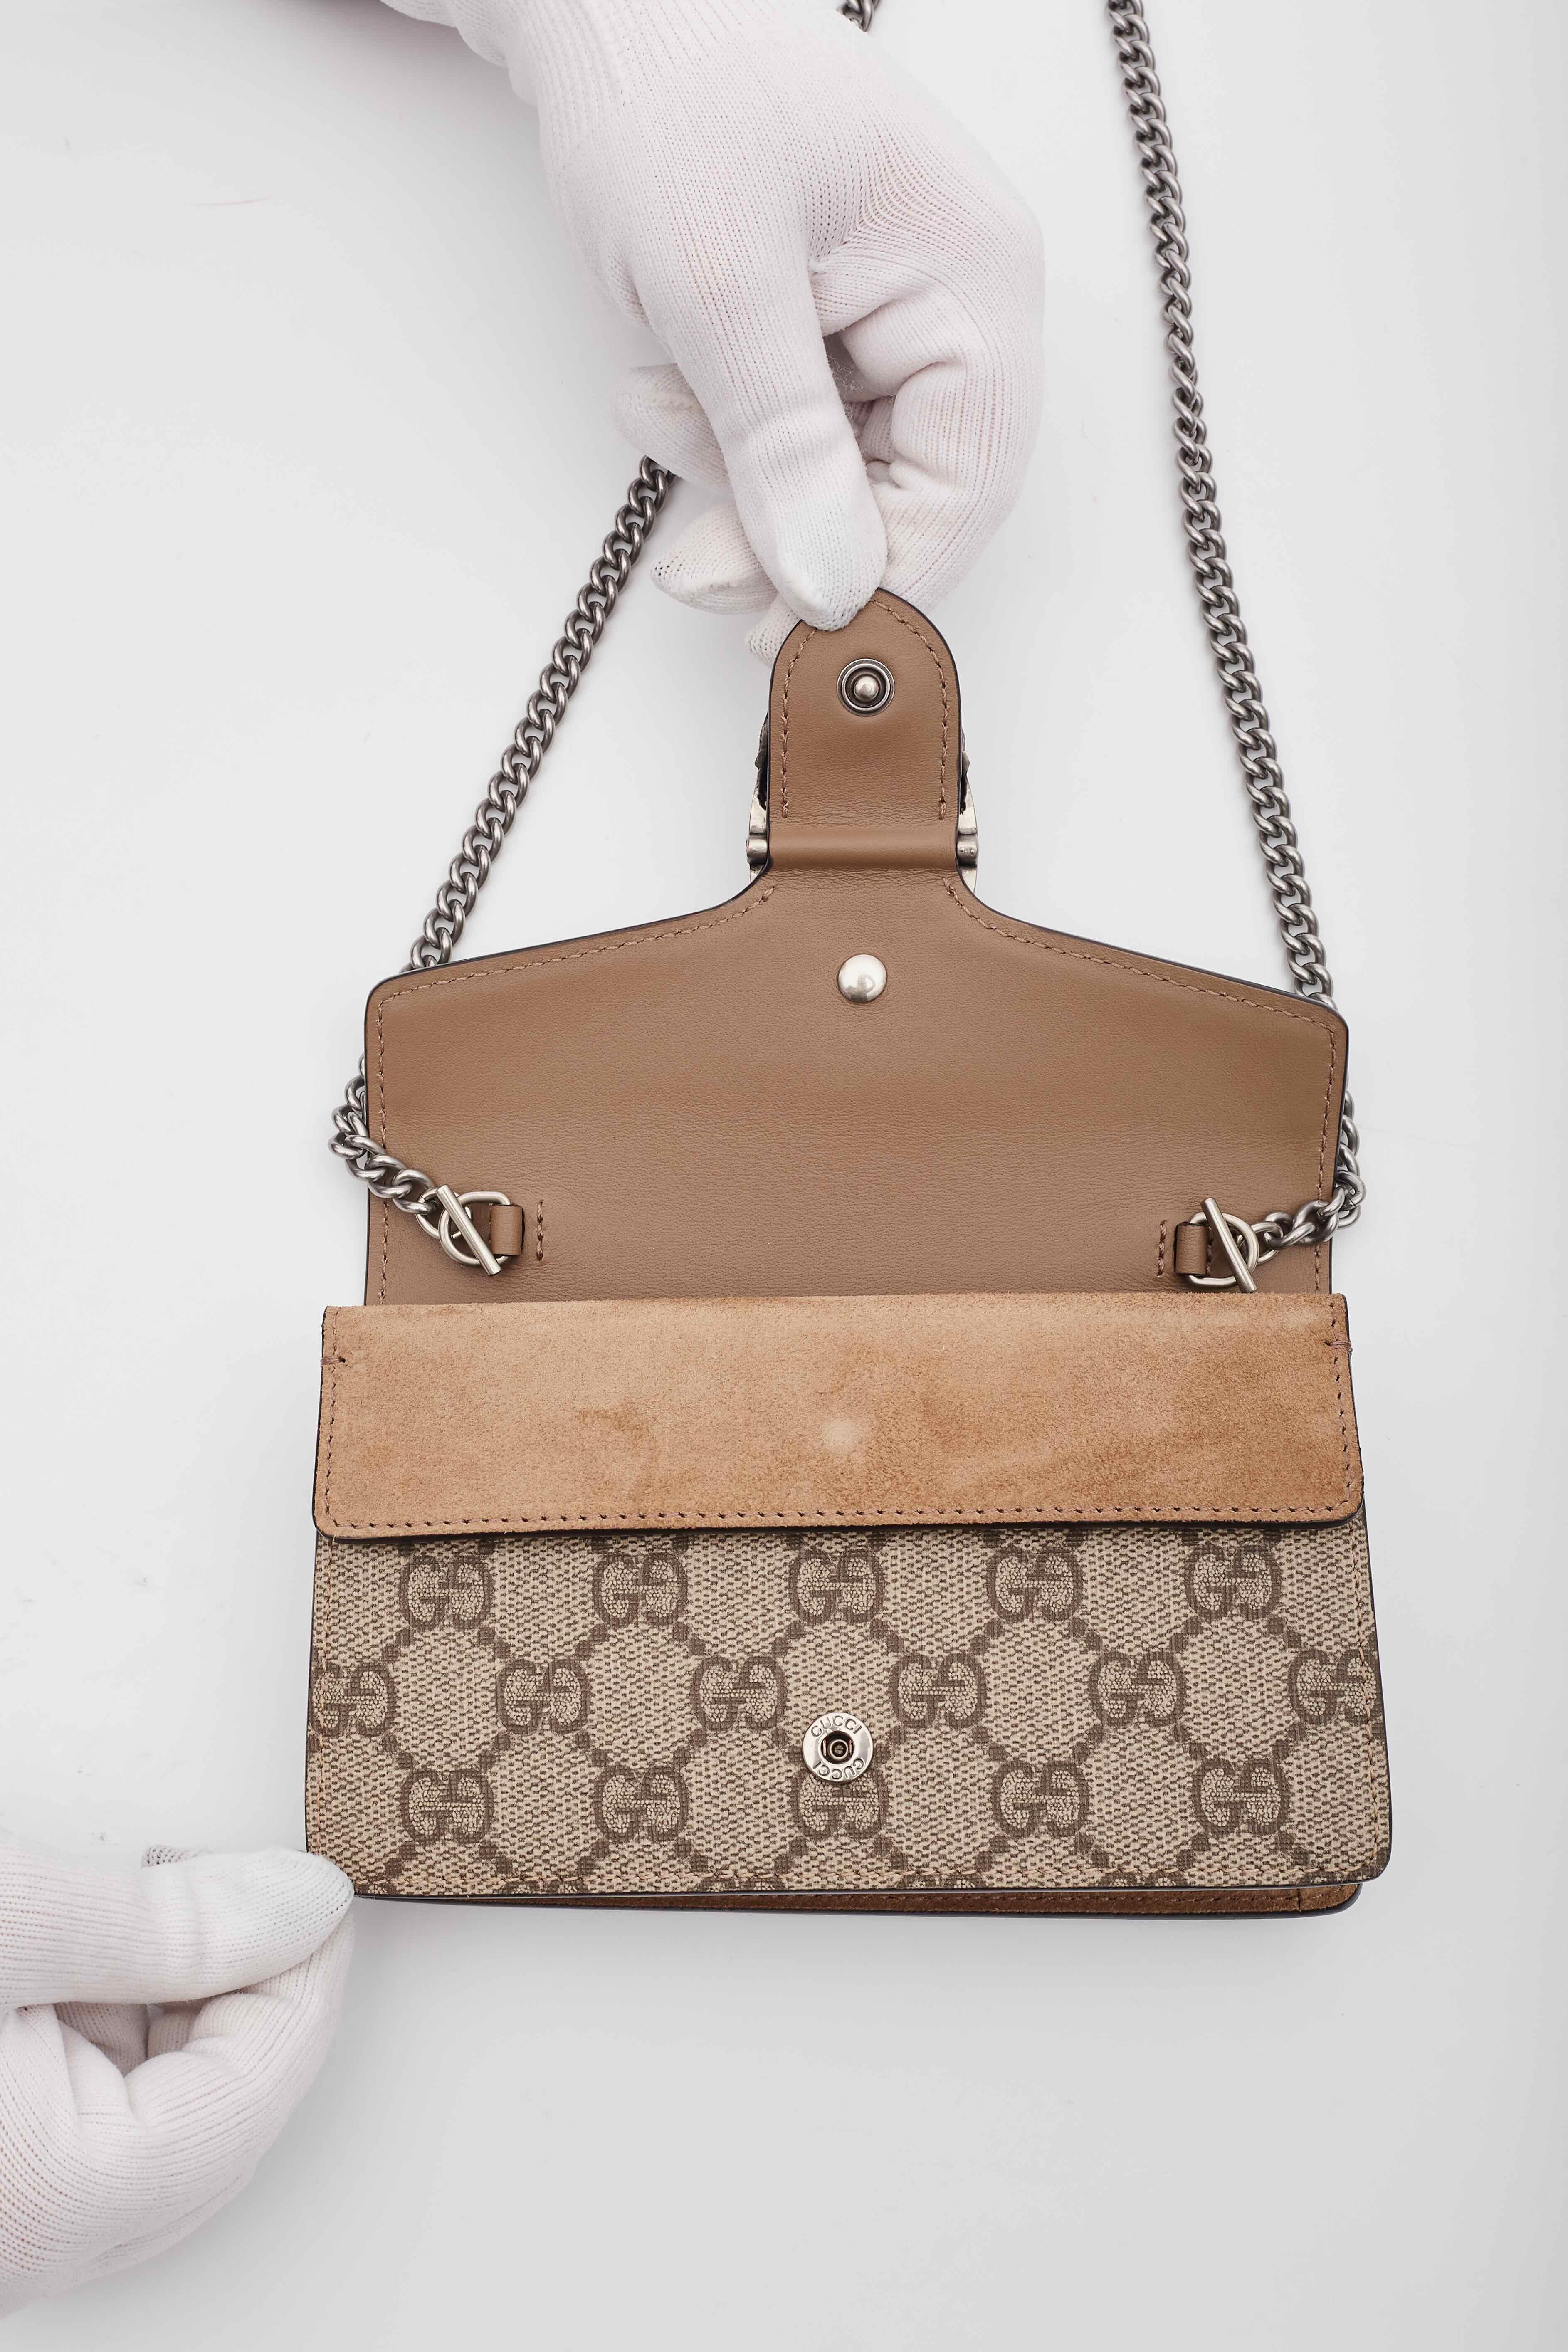 Gucci Super Mini Dionysus Monogram GG Supreme Bag  For Sale 3